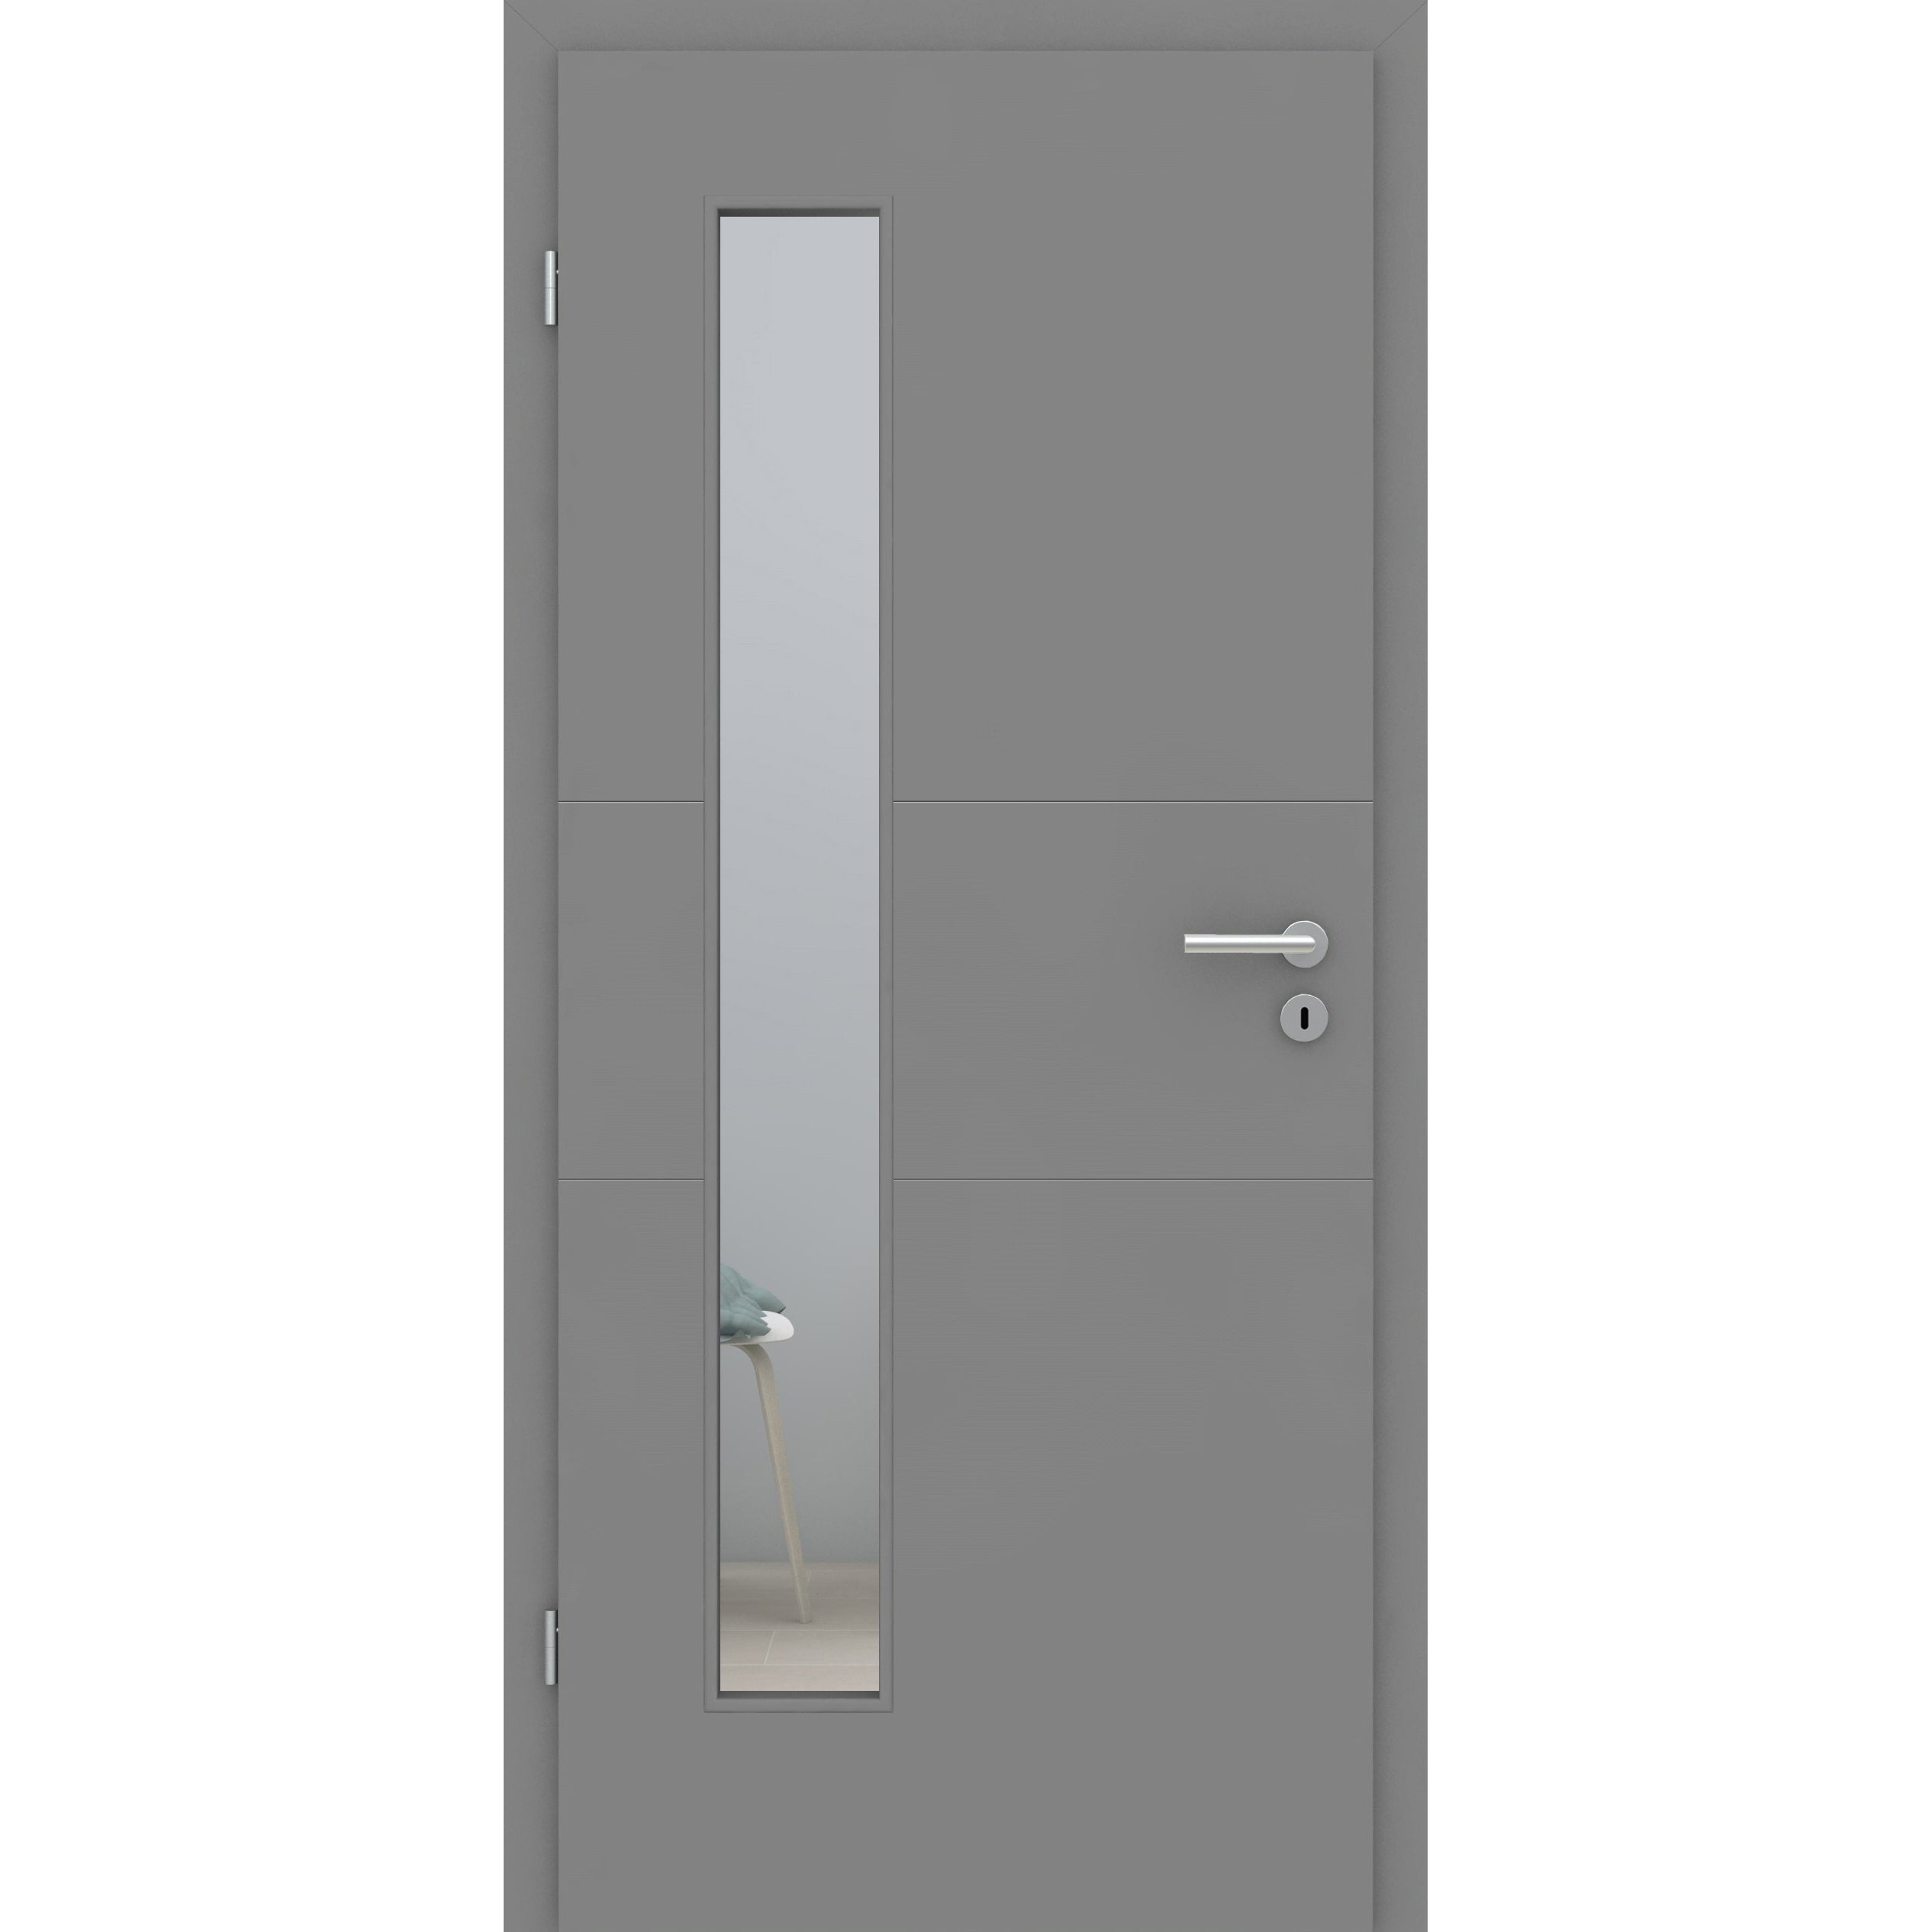 Zimmertür mit Lichtausschnitt grau 2 Rillen quer Designkante - Modell Designtür Q27LAB